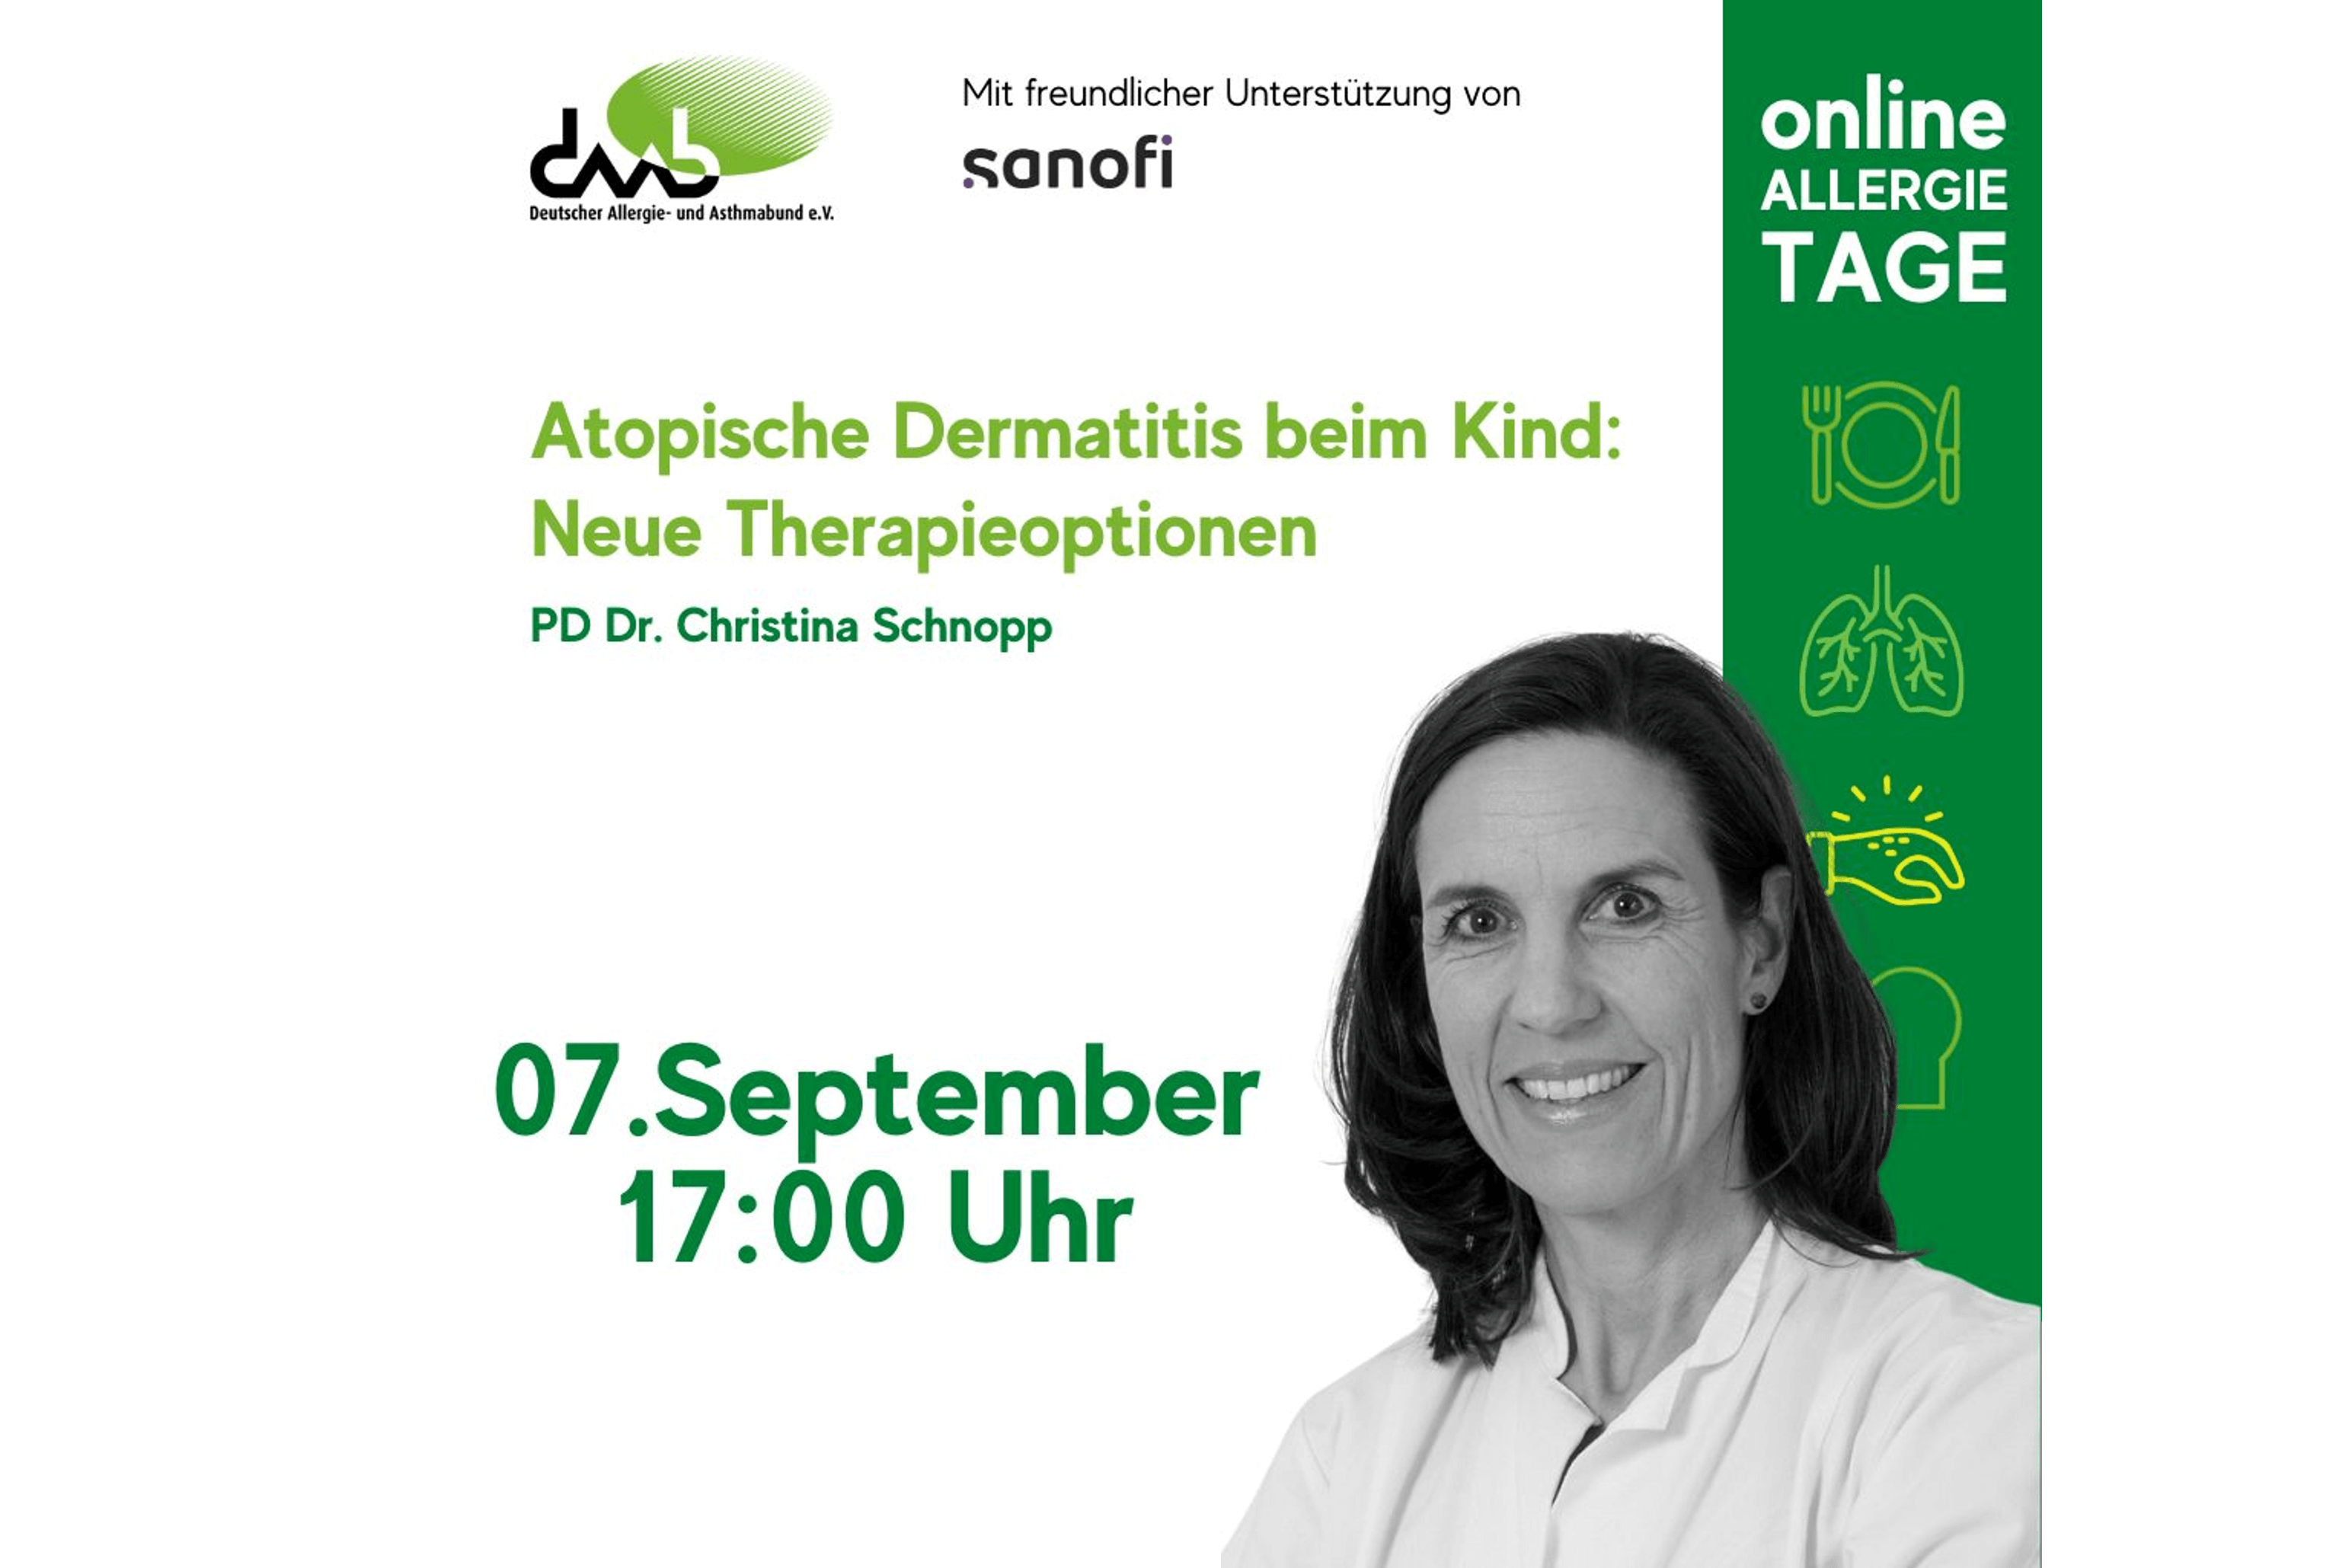 Vortragsankündigung mit PD Dr. Christina Schopp zu Atopischer Dermatitis bei Kindern